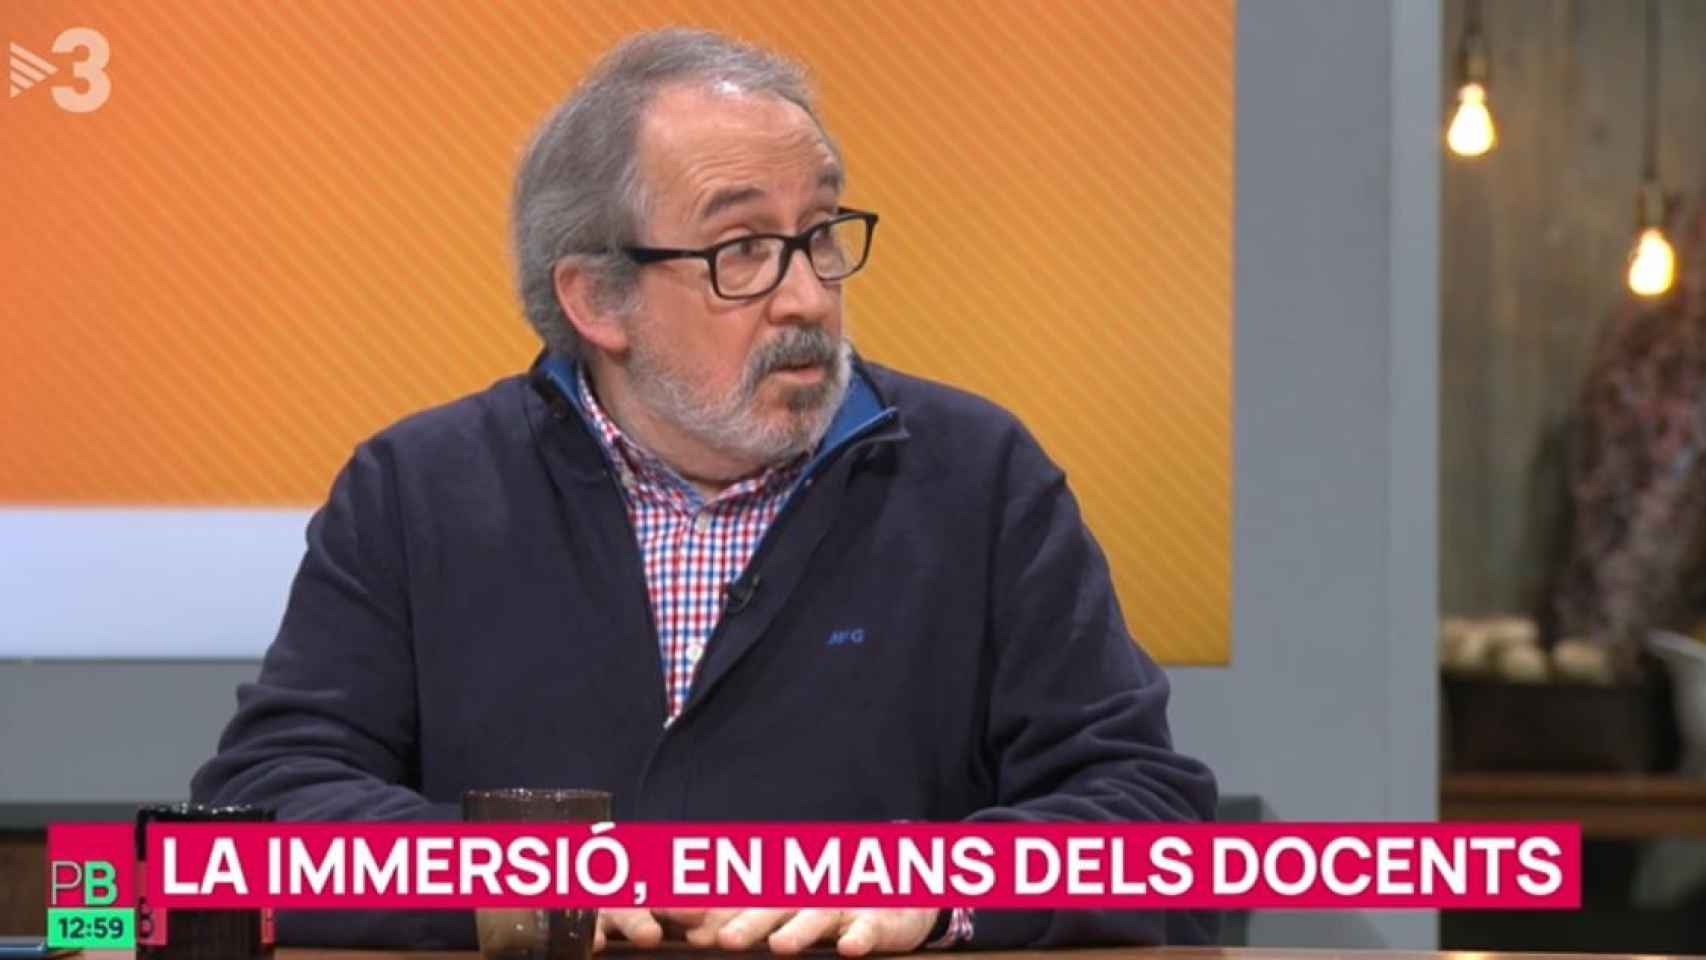 Exprofesor de secundaria Antoni Dalmases en TV3 / CG